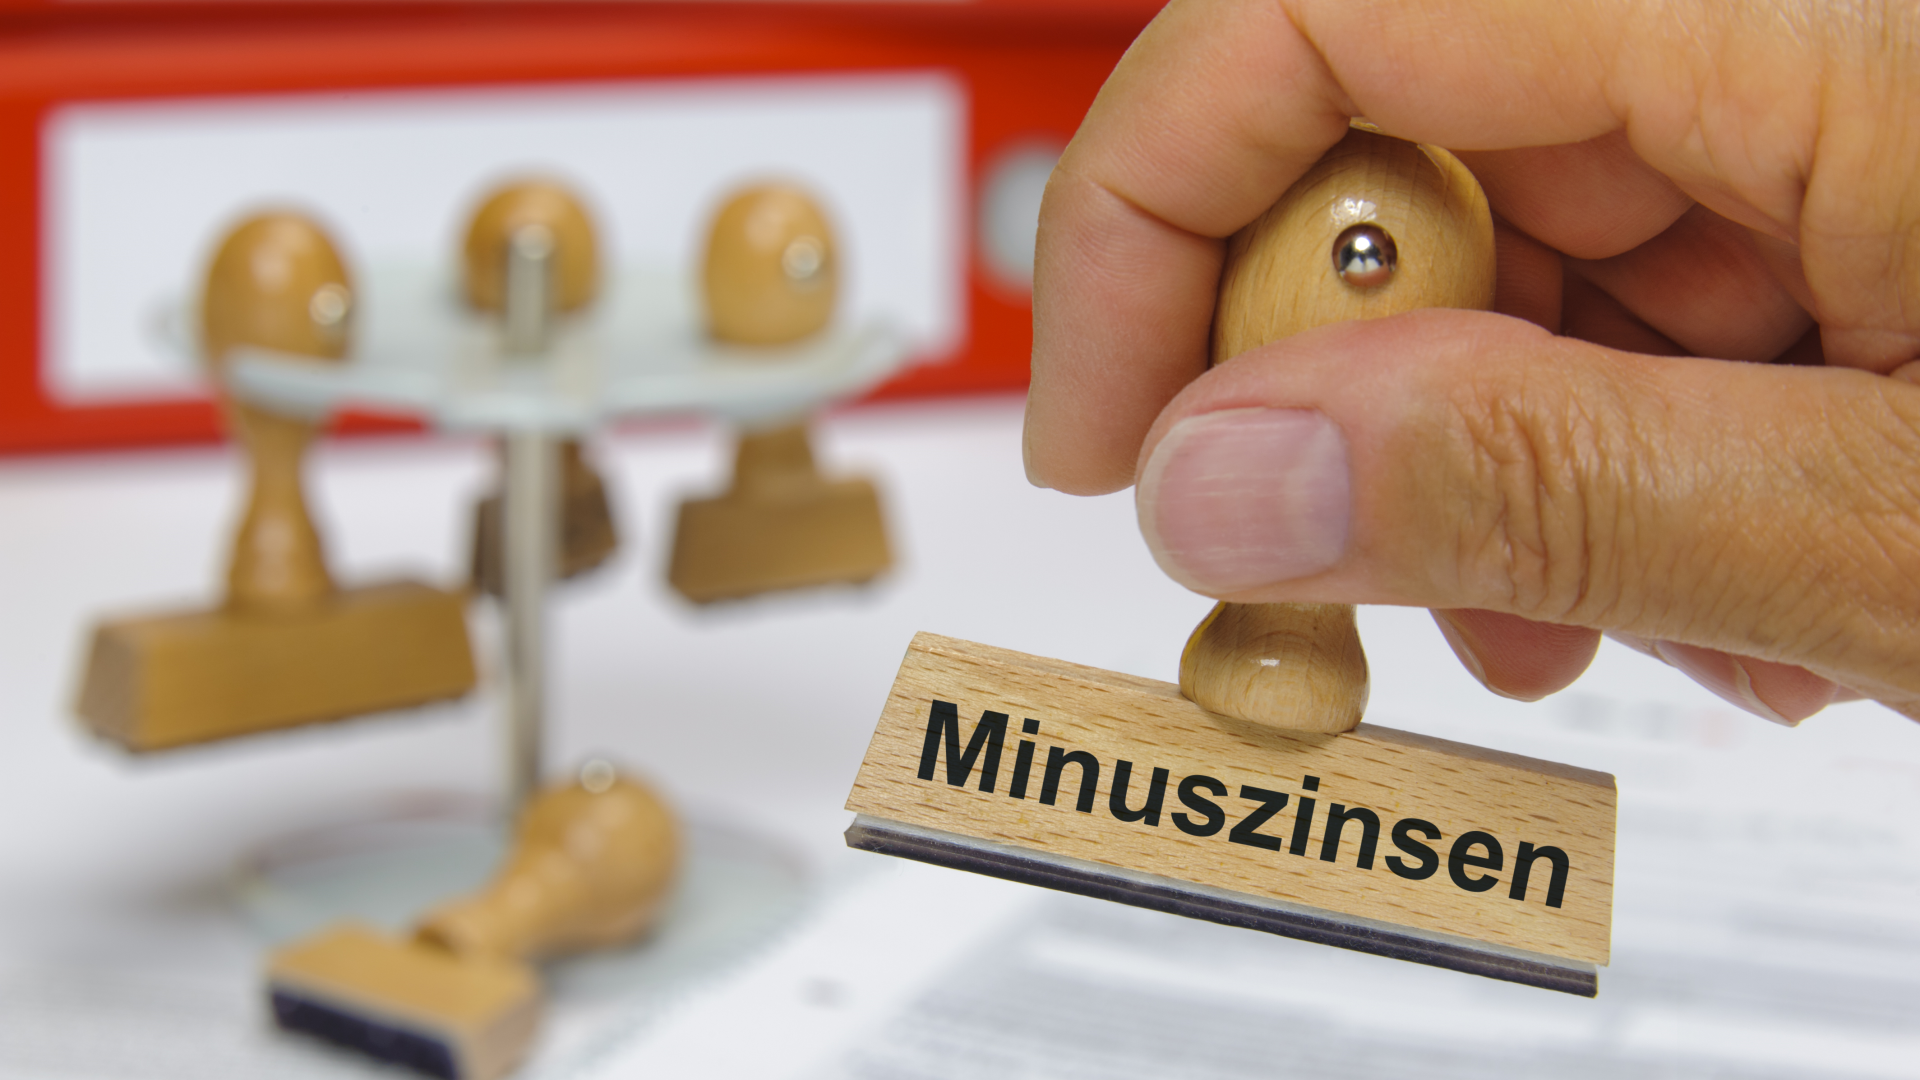 Stempel mit der Aufschrift "Minuszinsen" | Foto: Colourbox